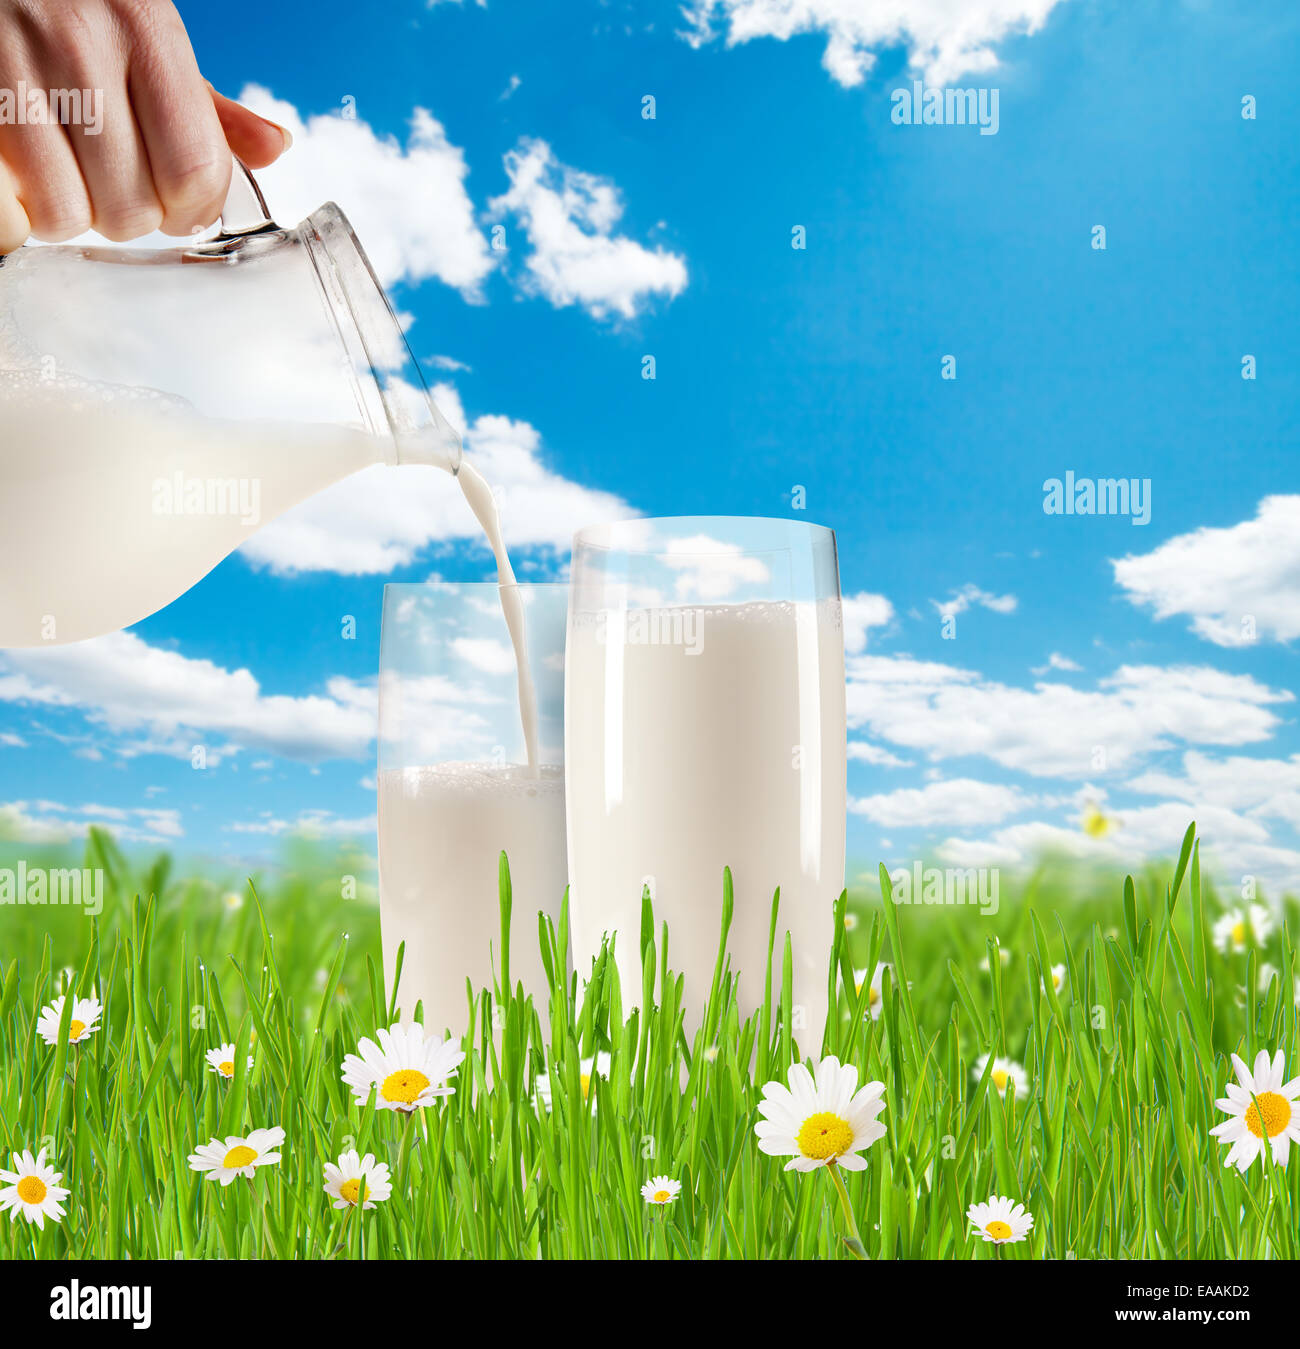 Konzept der Frischmilch in Glas Gras mit blühenden Kamillen. Blauer Himmel mit Wolken im Hintergrund Stockfoto